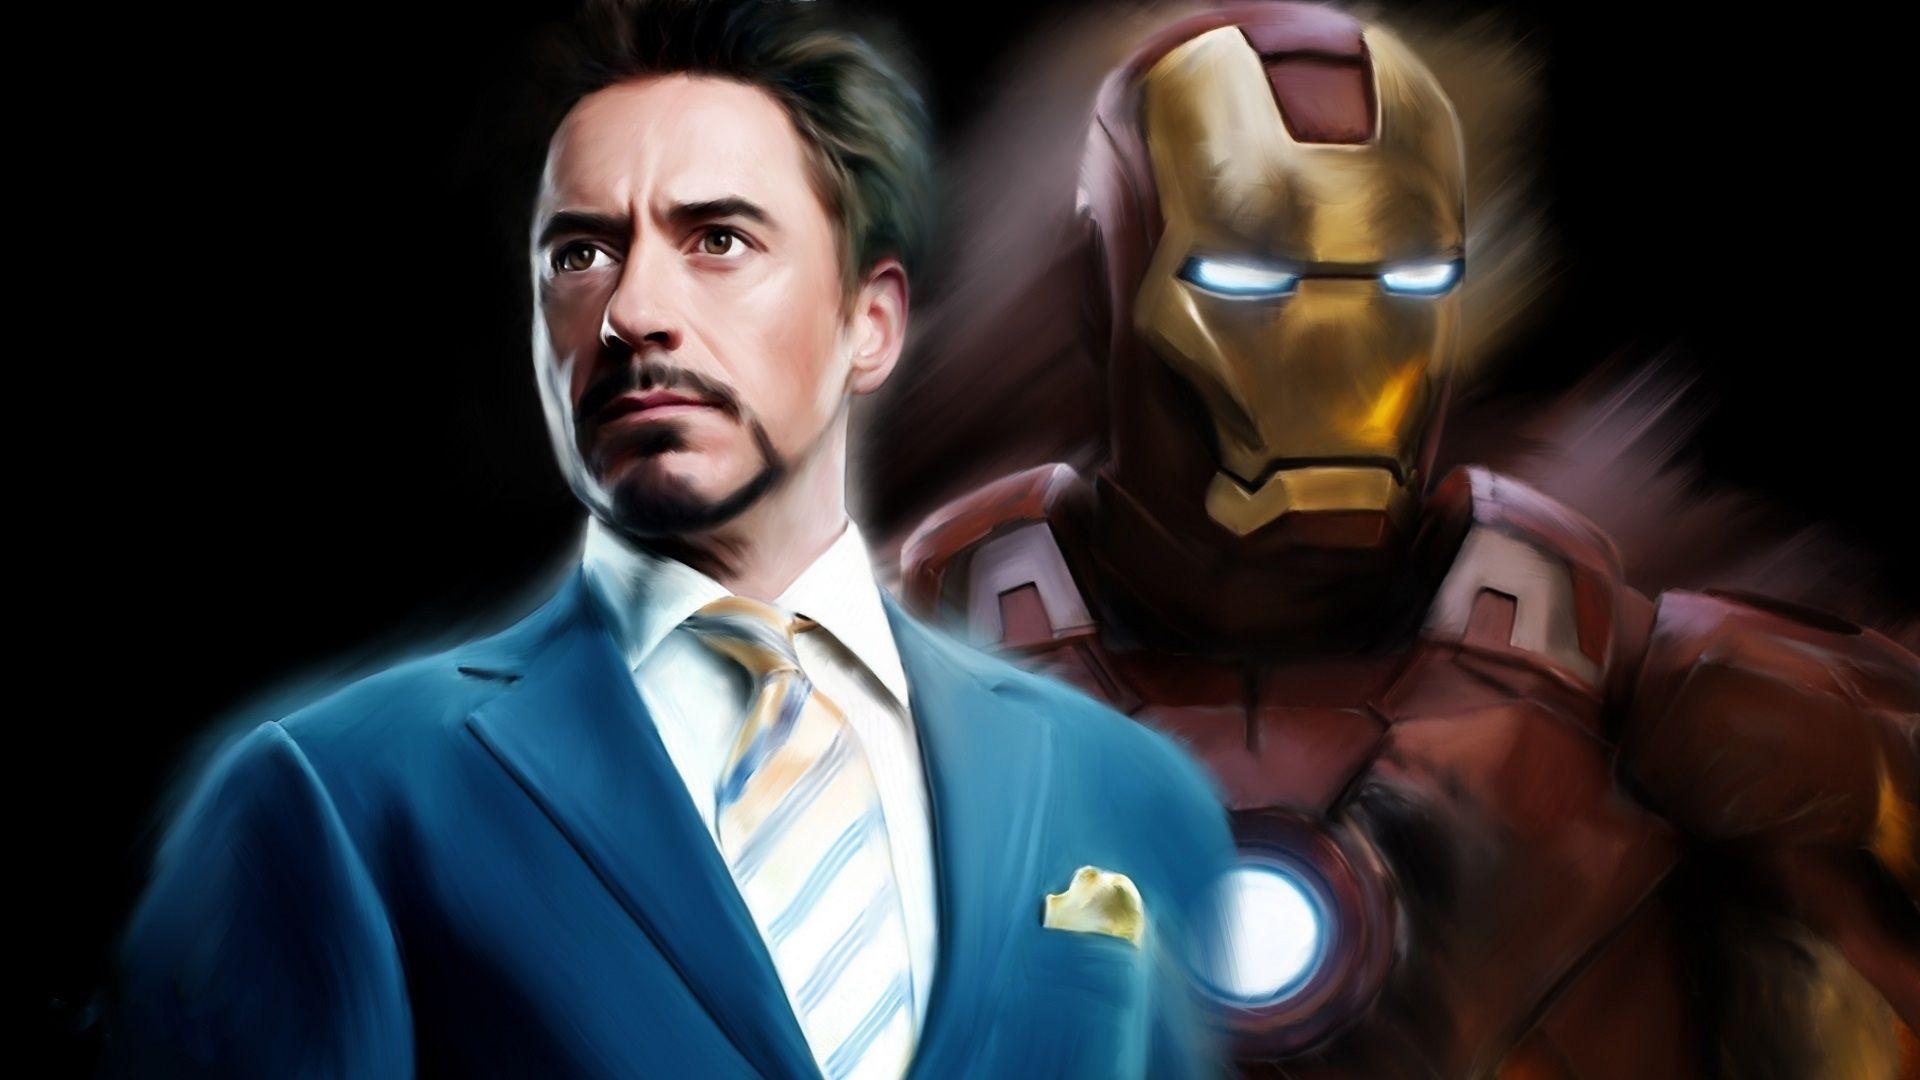 Tony Stark Desktop Wallpapers - Top Free Tony Stark Desktop Backgrounds